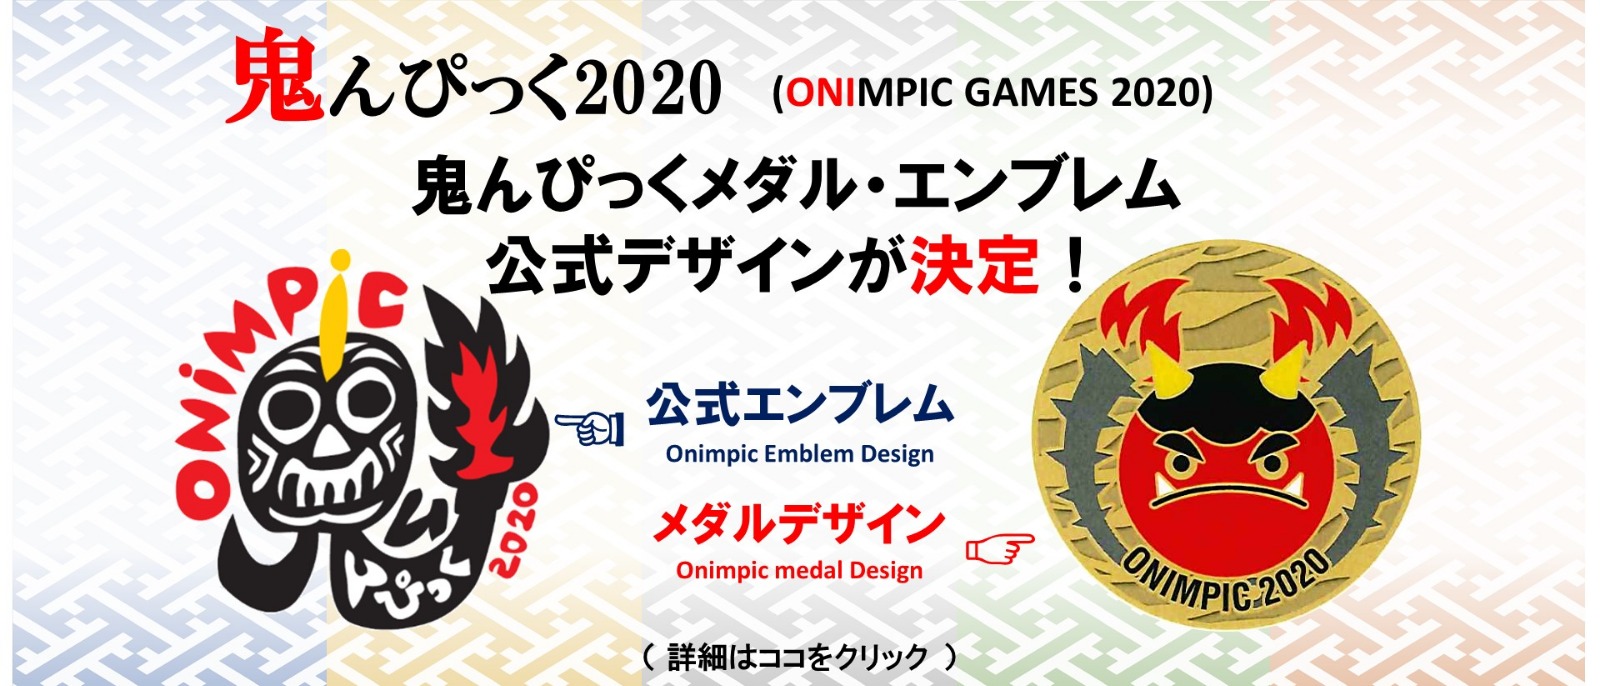 鬼んぴっく２０２０（Kunisaki Onimpic Games 2020）デザイン決定